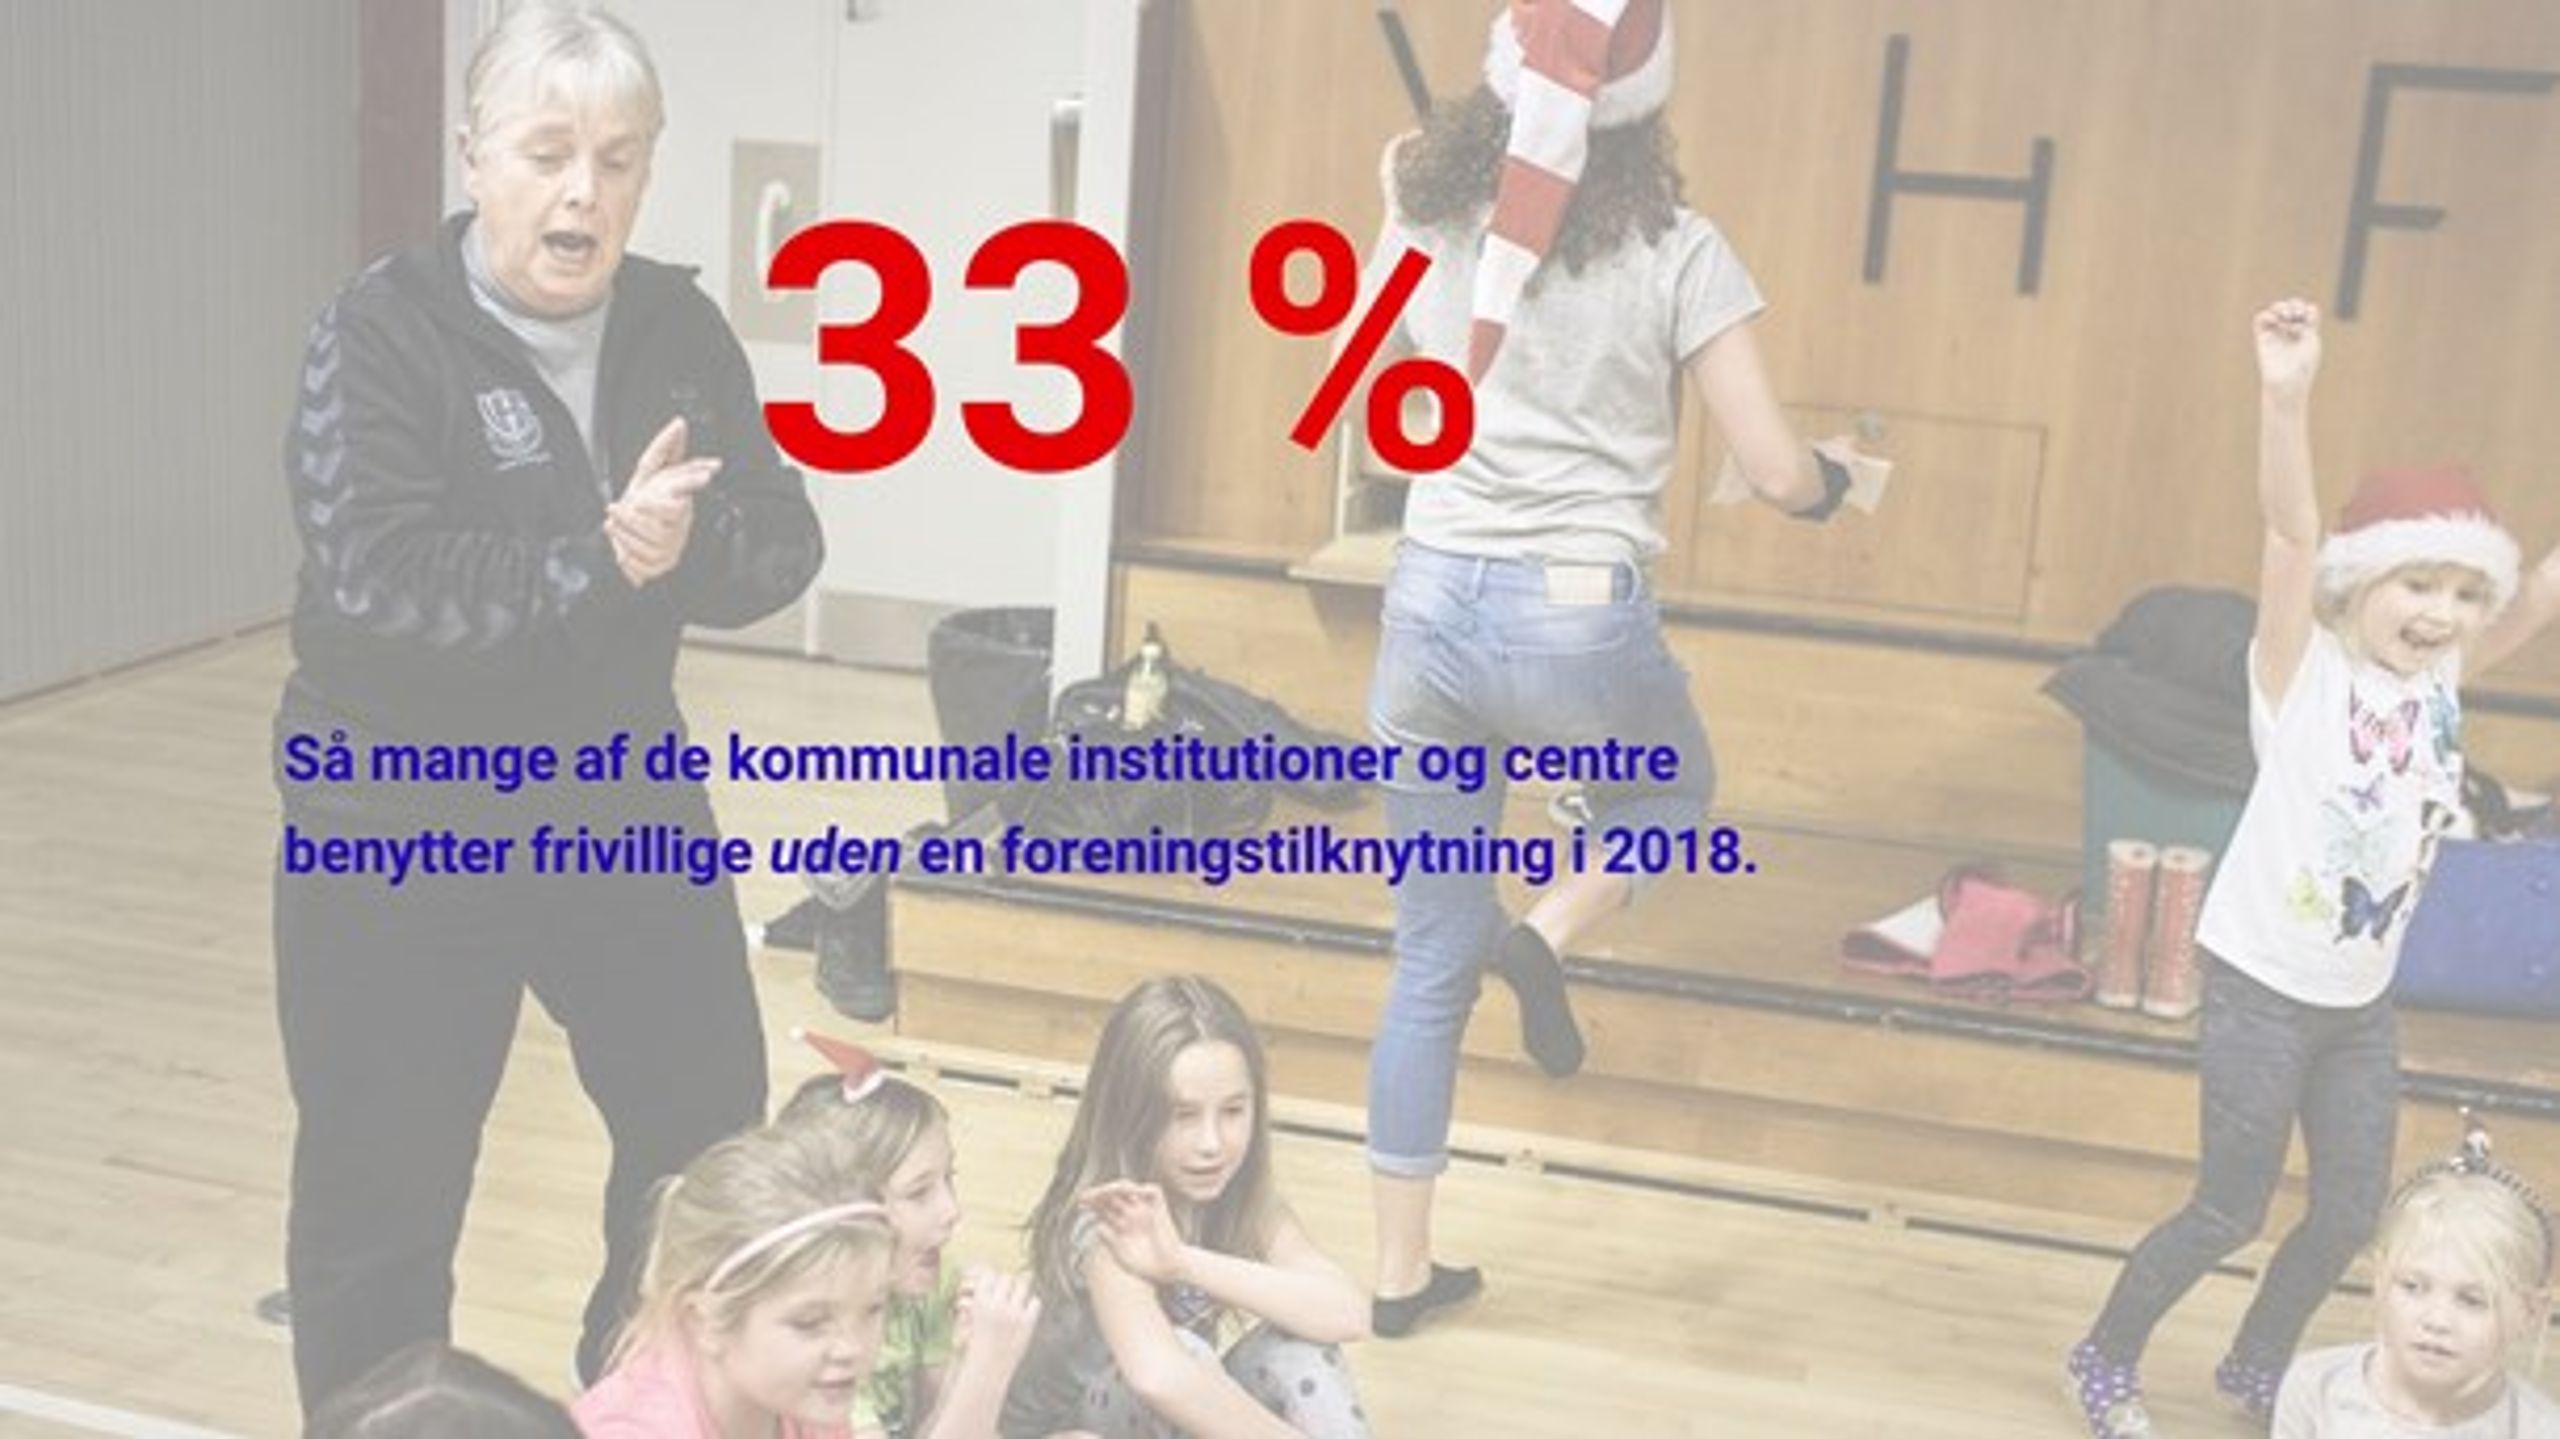 Tallet stammer fra rapporten "'Frie frivillige' i kommunen" fra SDU i 2018.